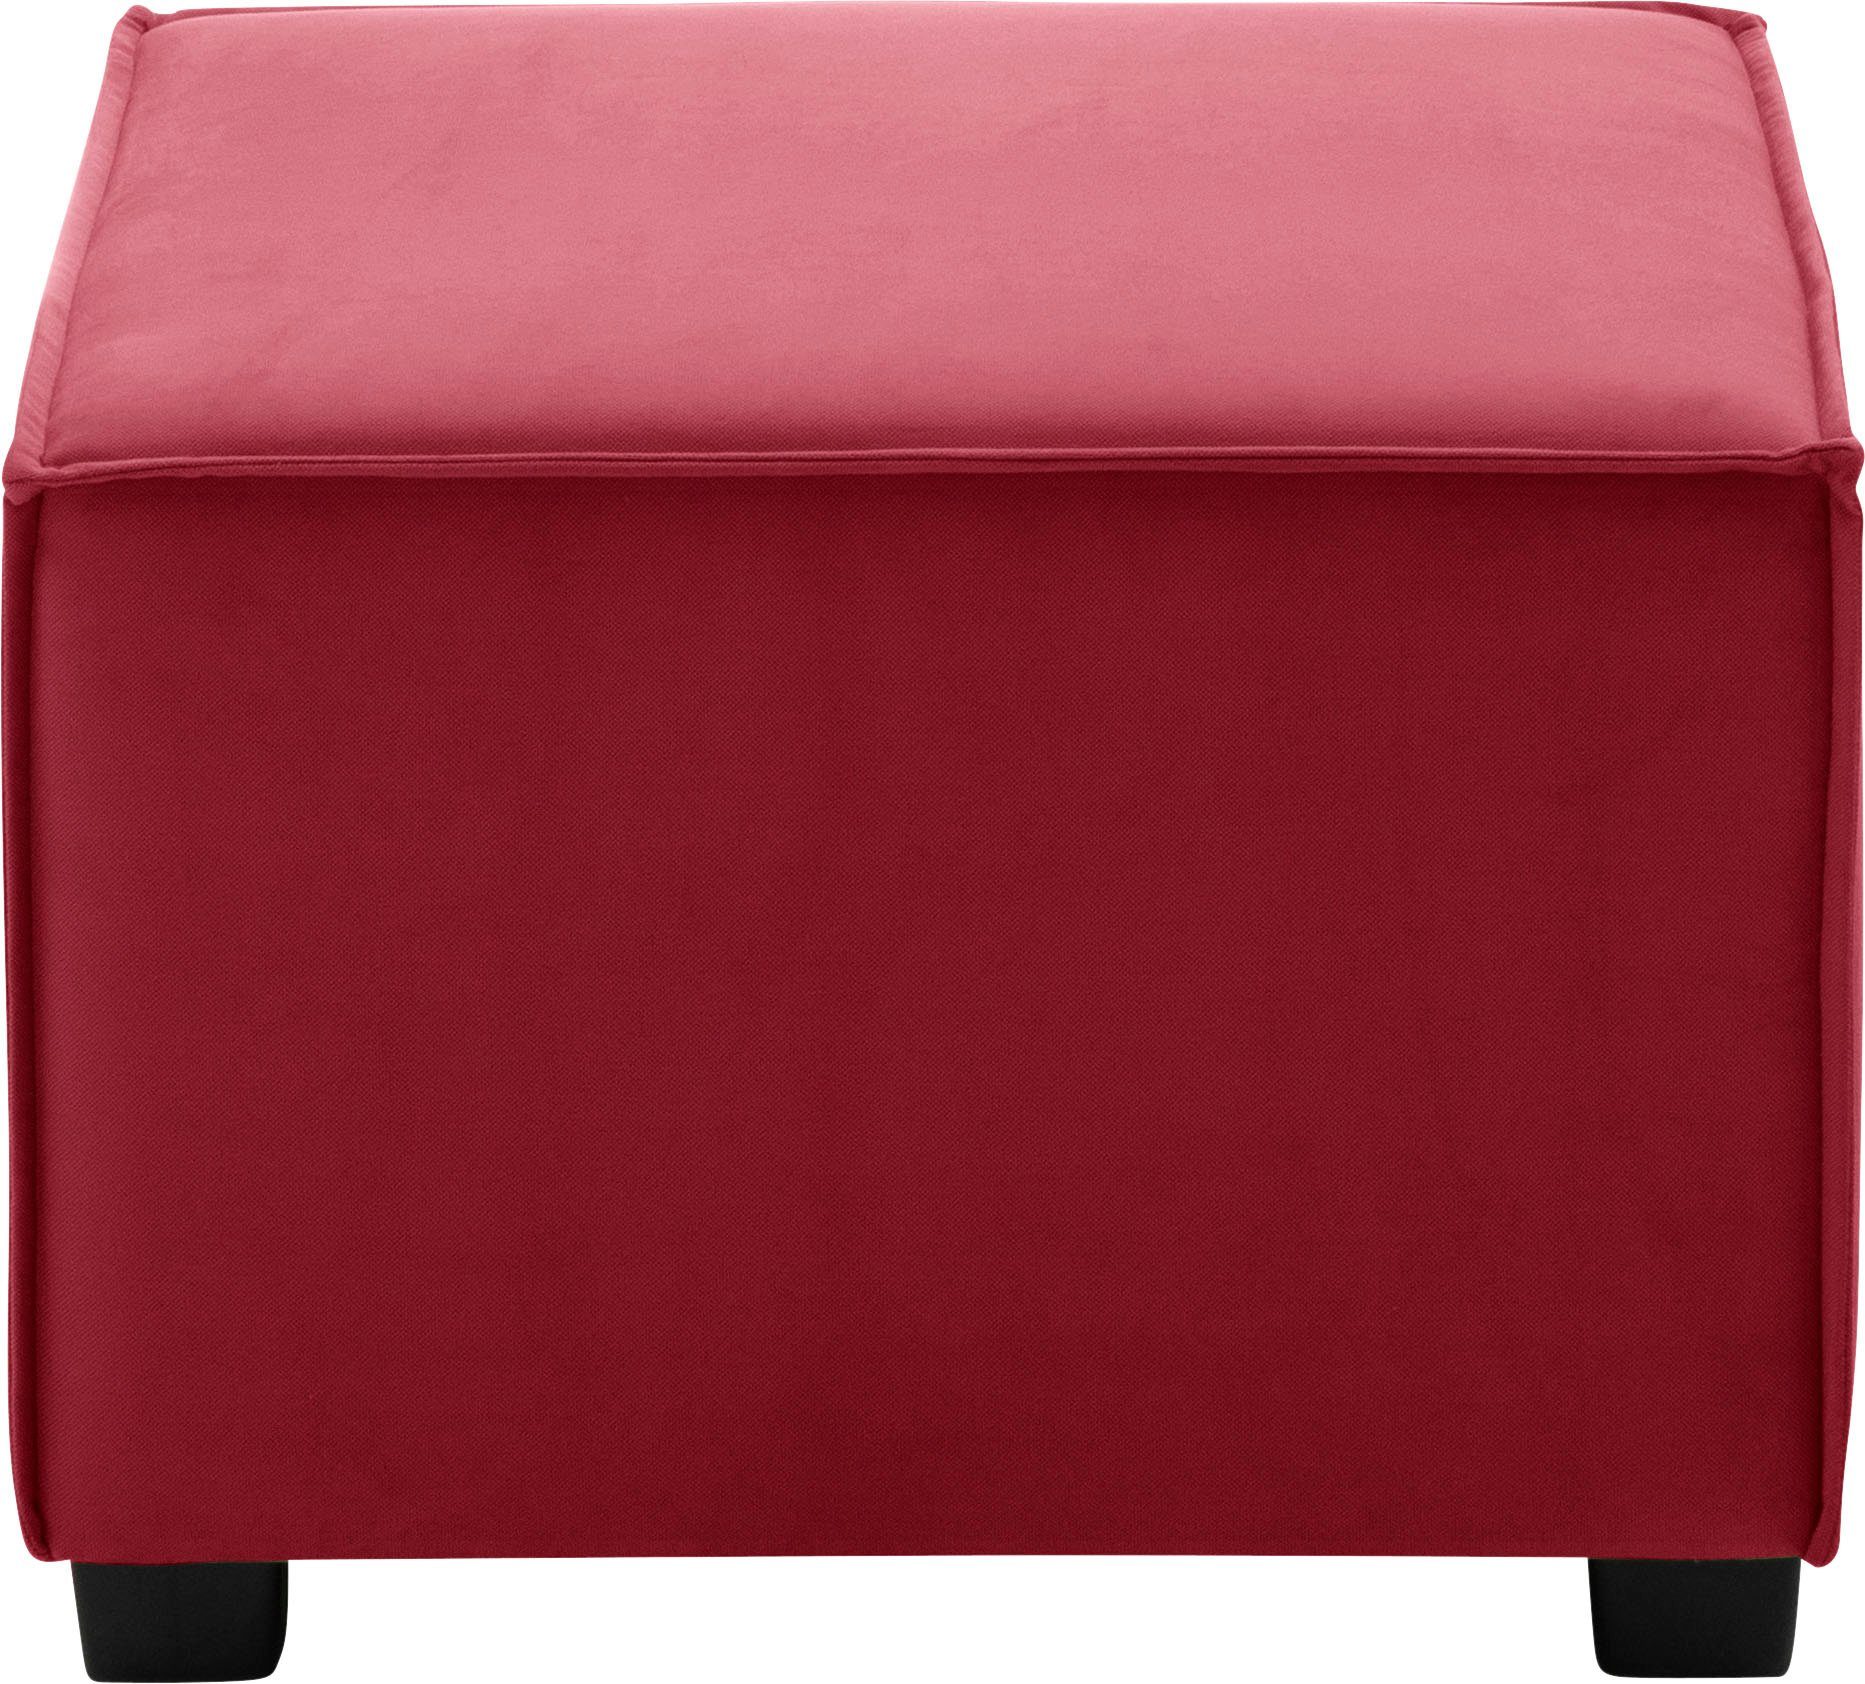 Max Winzer® Sofaelement MOVE, Einzelelement cm, rot 60/60/42 individuell kombinierbar